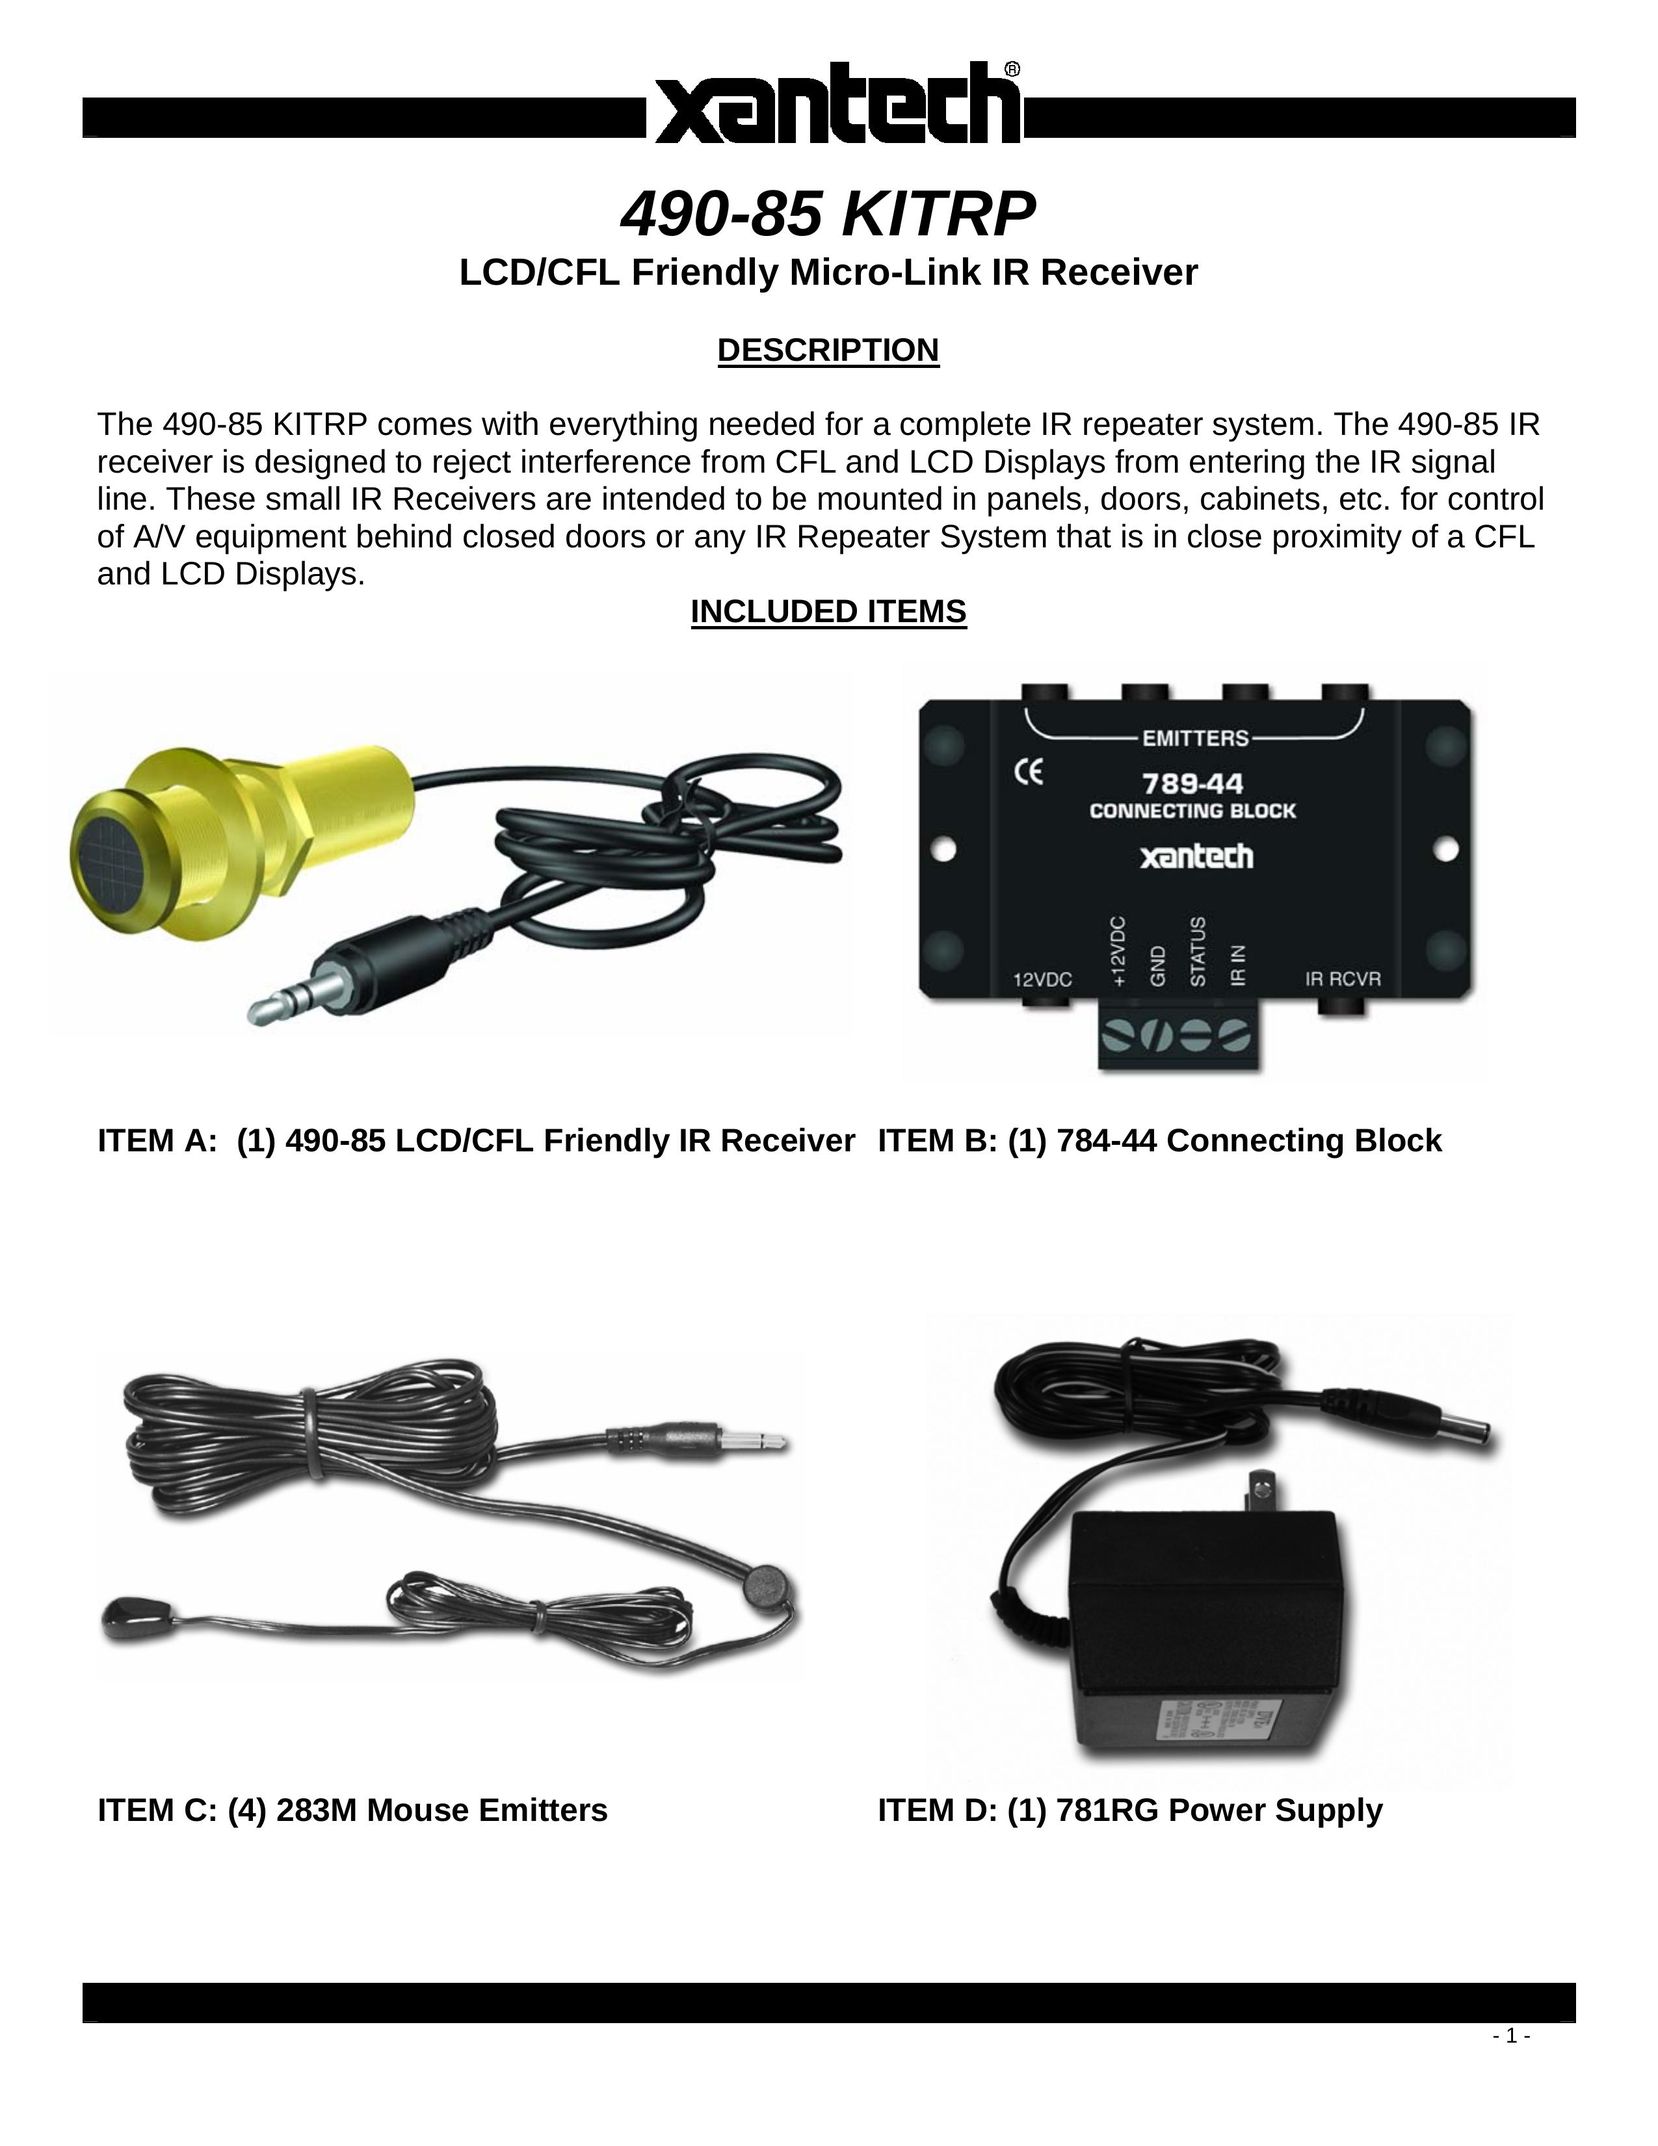 Xantech 490-85 KITRP Stereo Receiver User Manual